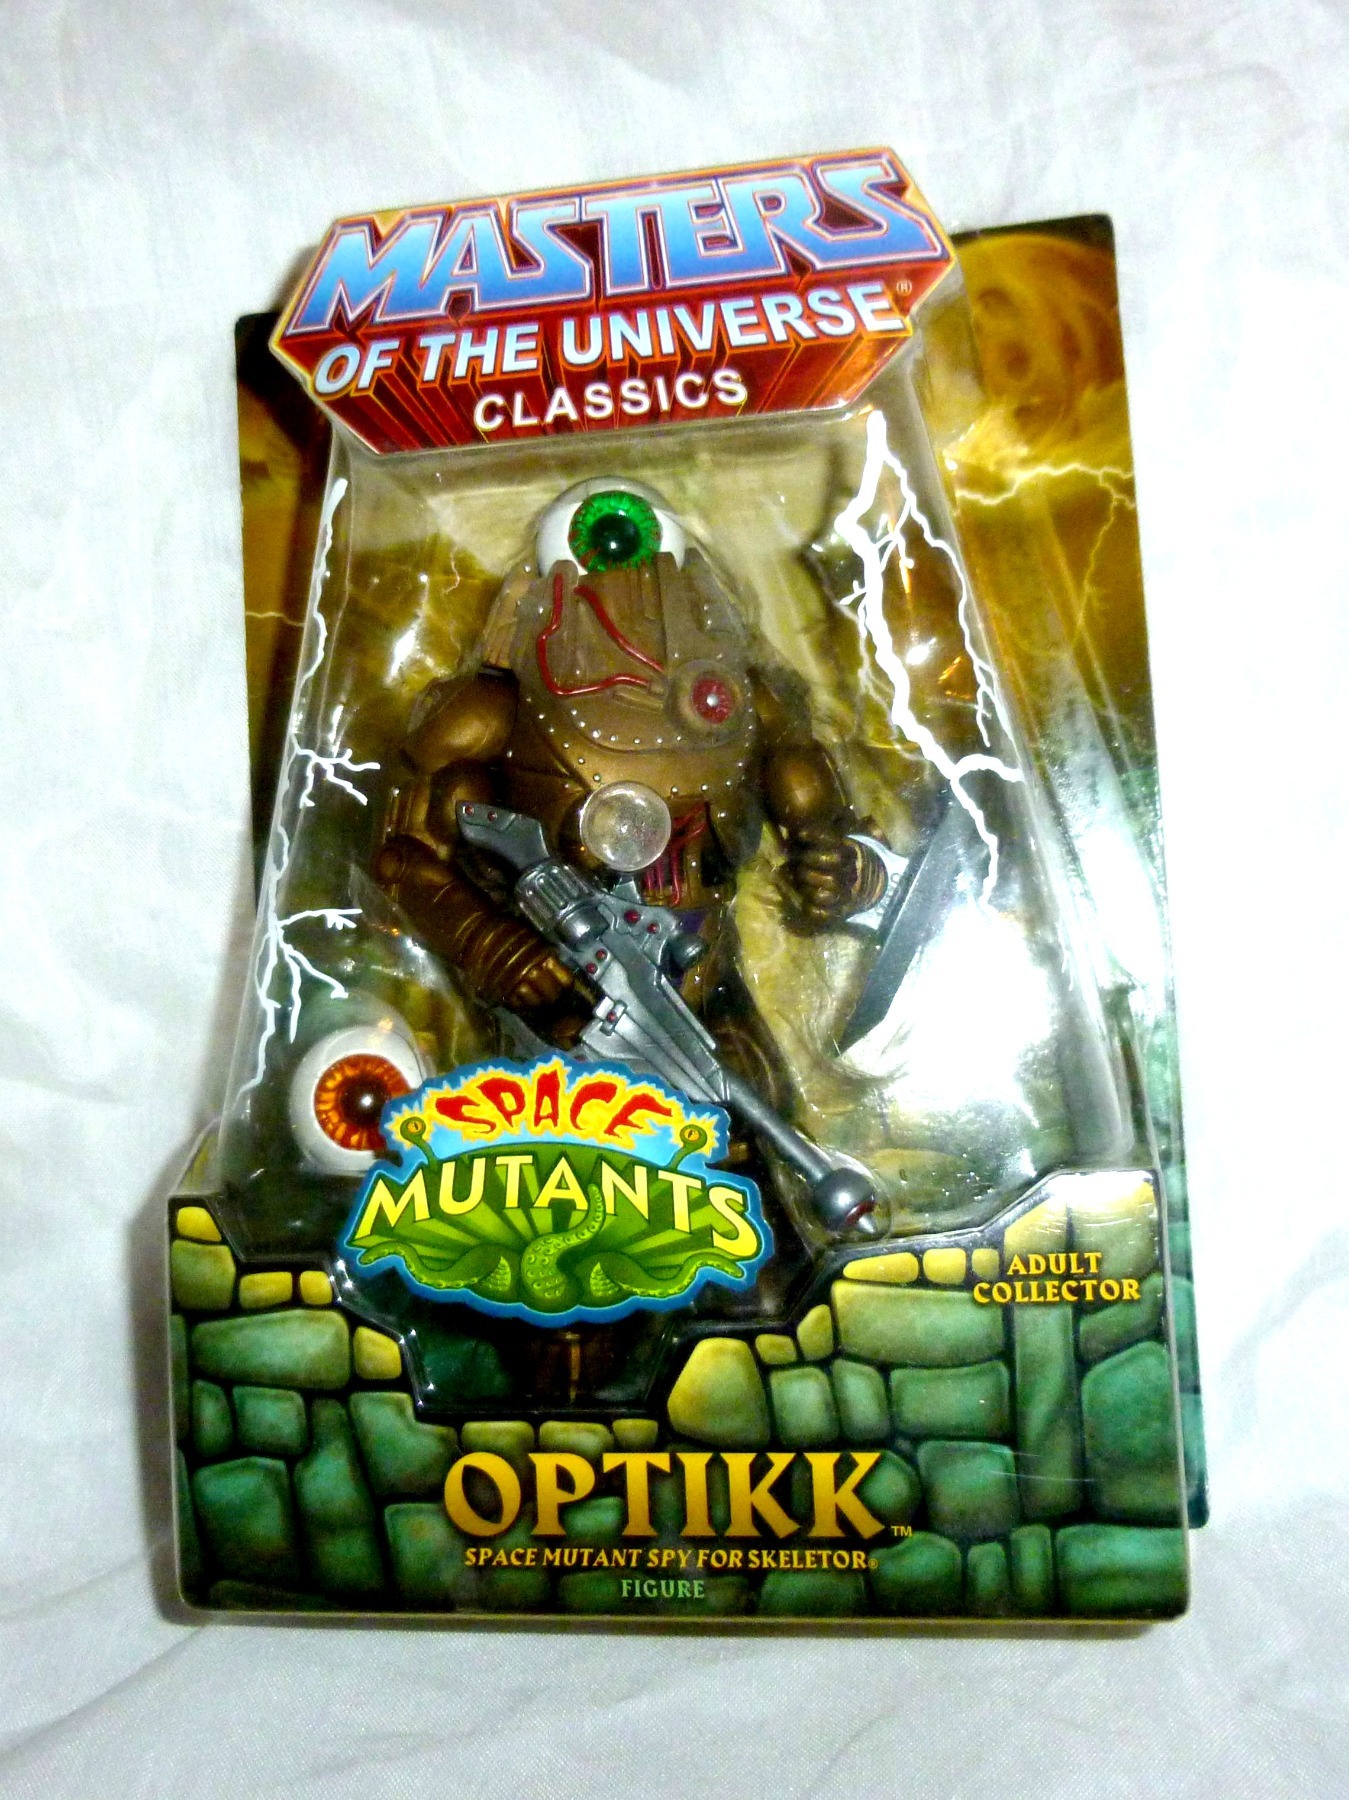 Optikk - Space Mutant Spy for Skeletor